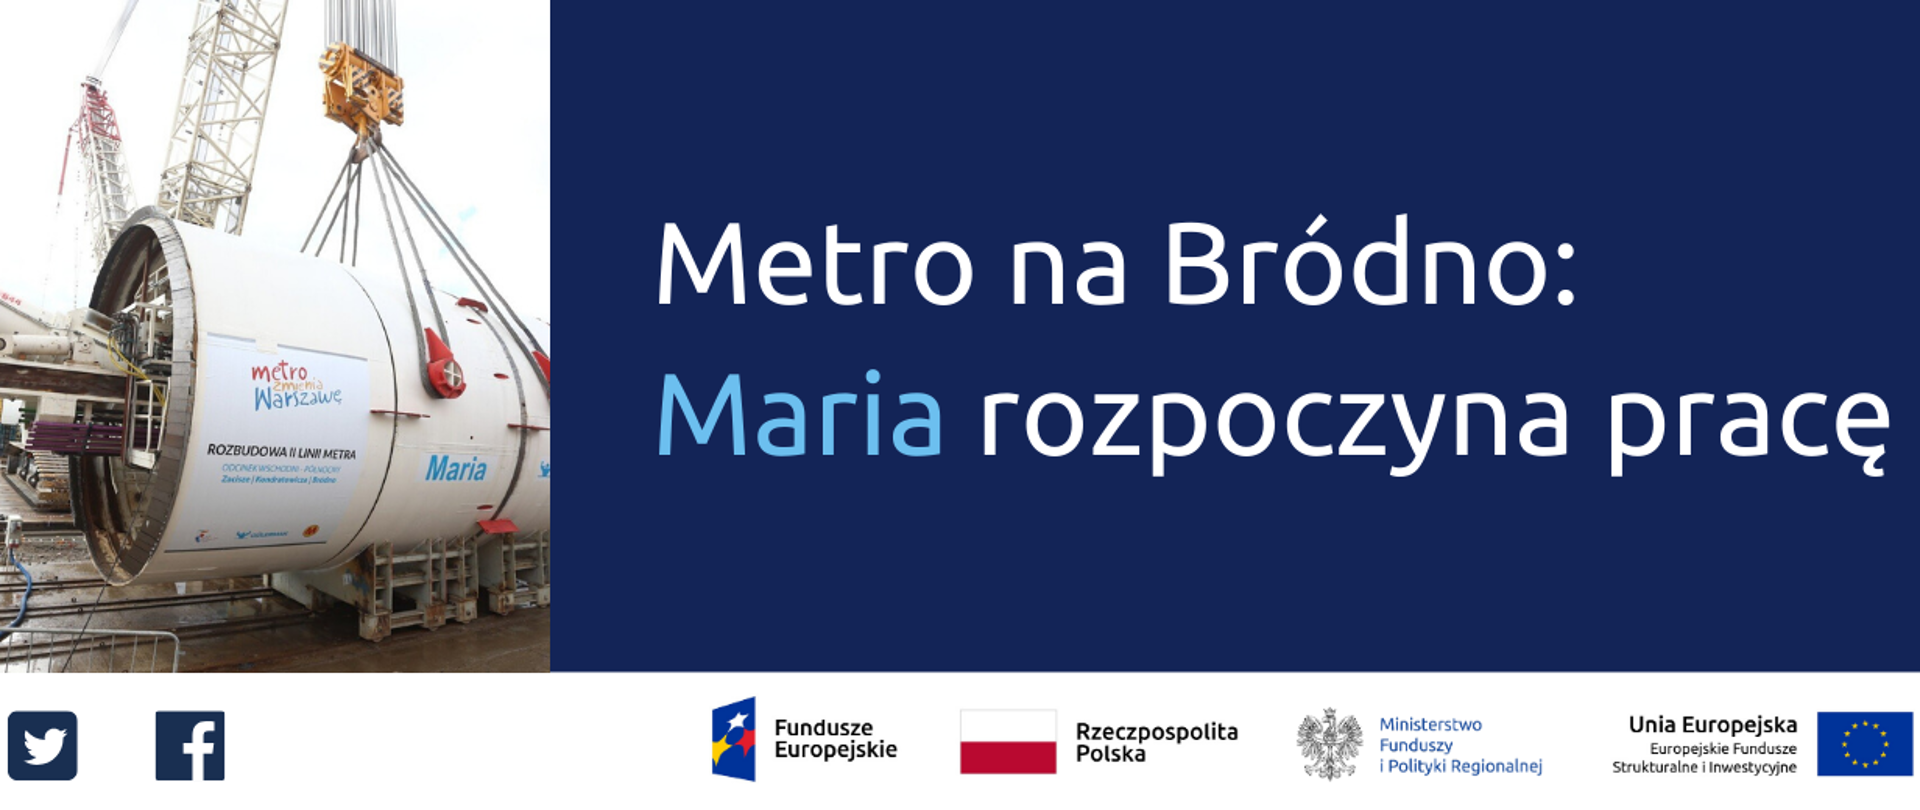 200504_Metro_Brudno_gov